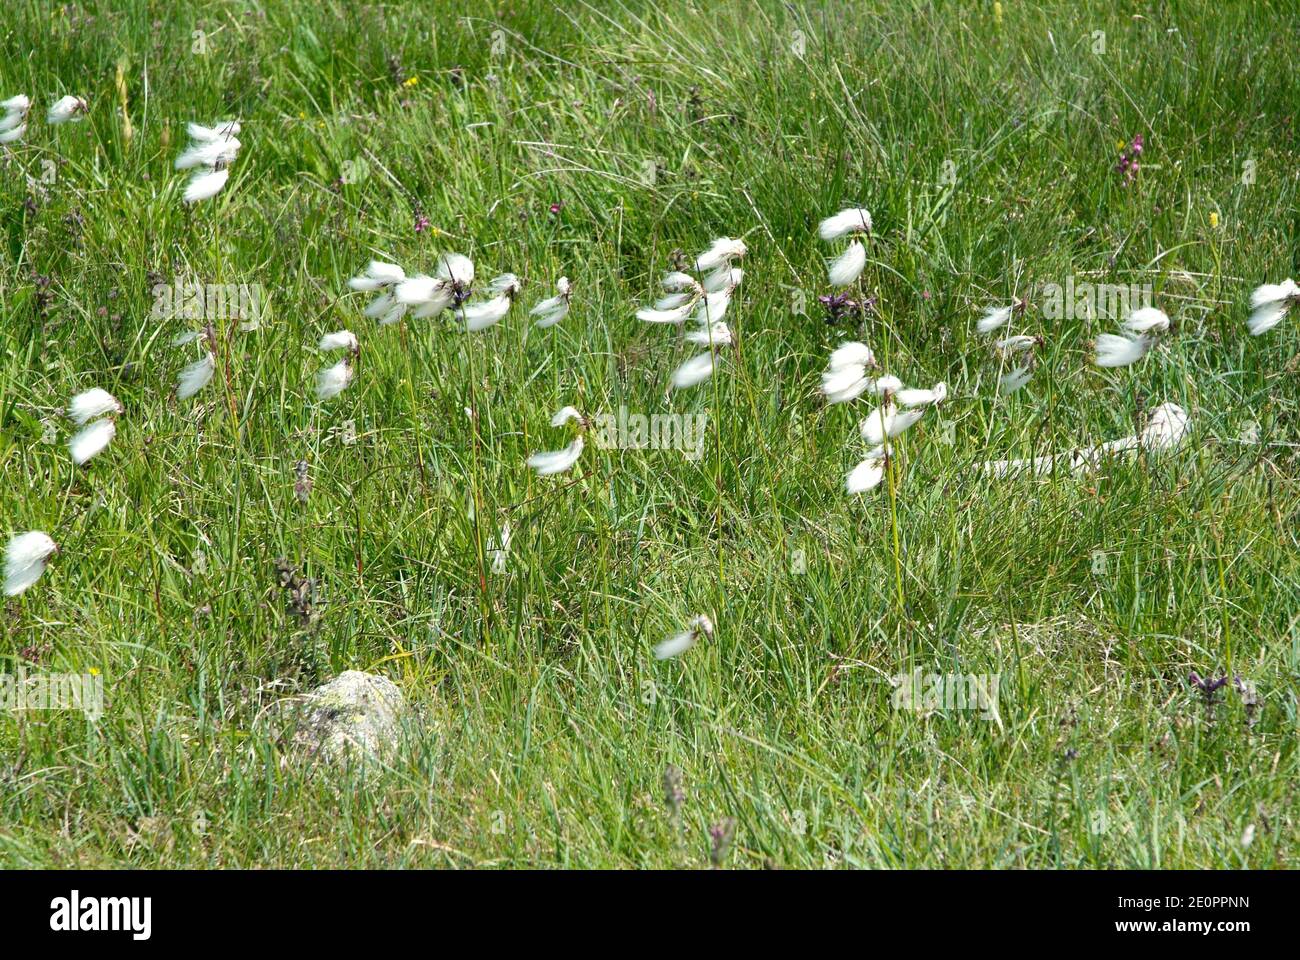 La hierba de algodón común (eriophorum angustifolium) es una hierba perenne nativa de Europa, América del Norte y Asia del Norte. Esta foto fue tomada Foto de stock